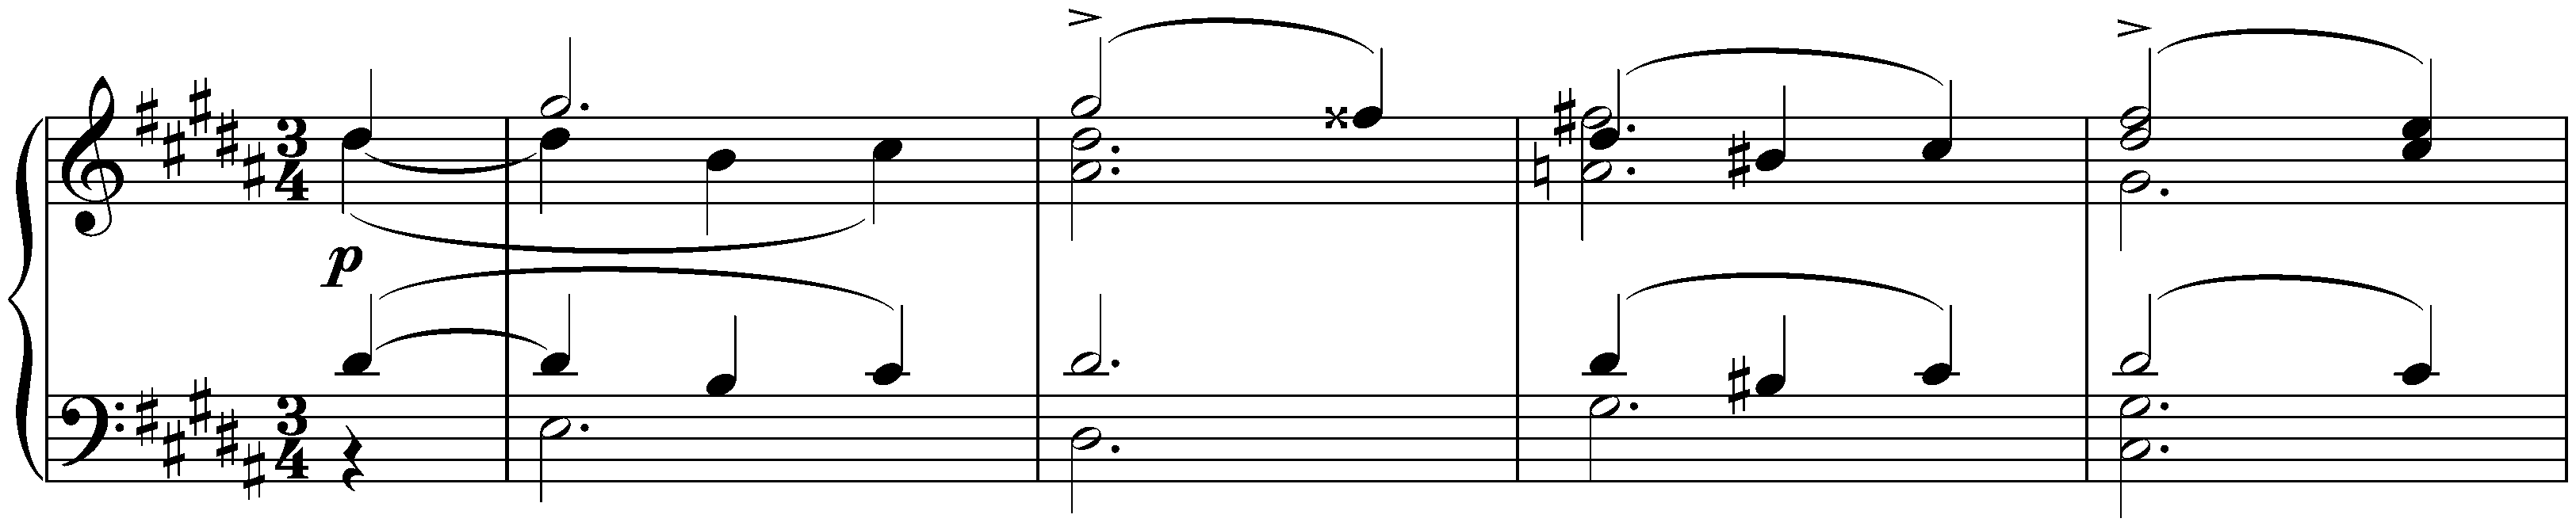 Twelve deutsche Tänze, D 790; 6. G-sharp minor